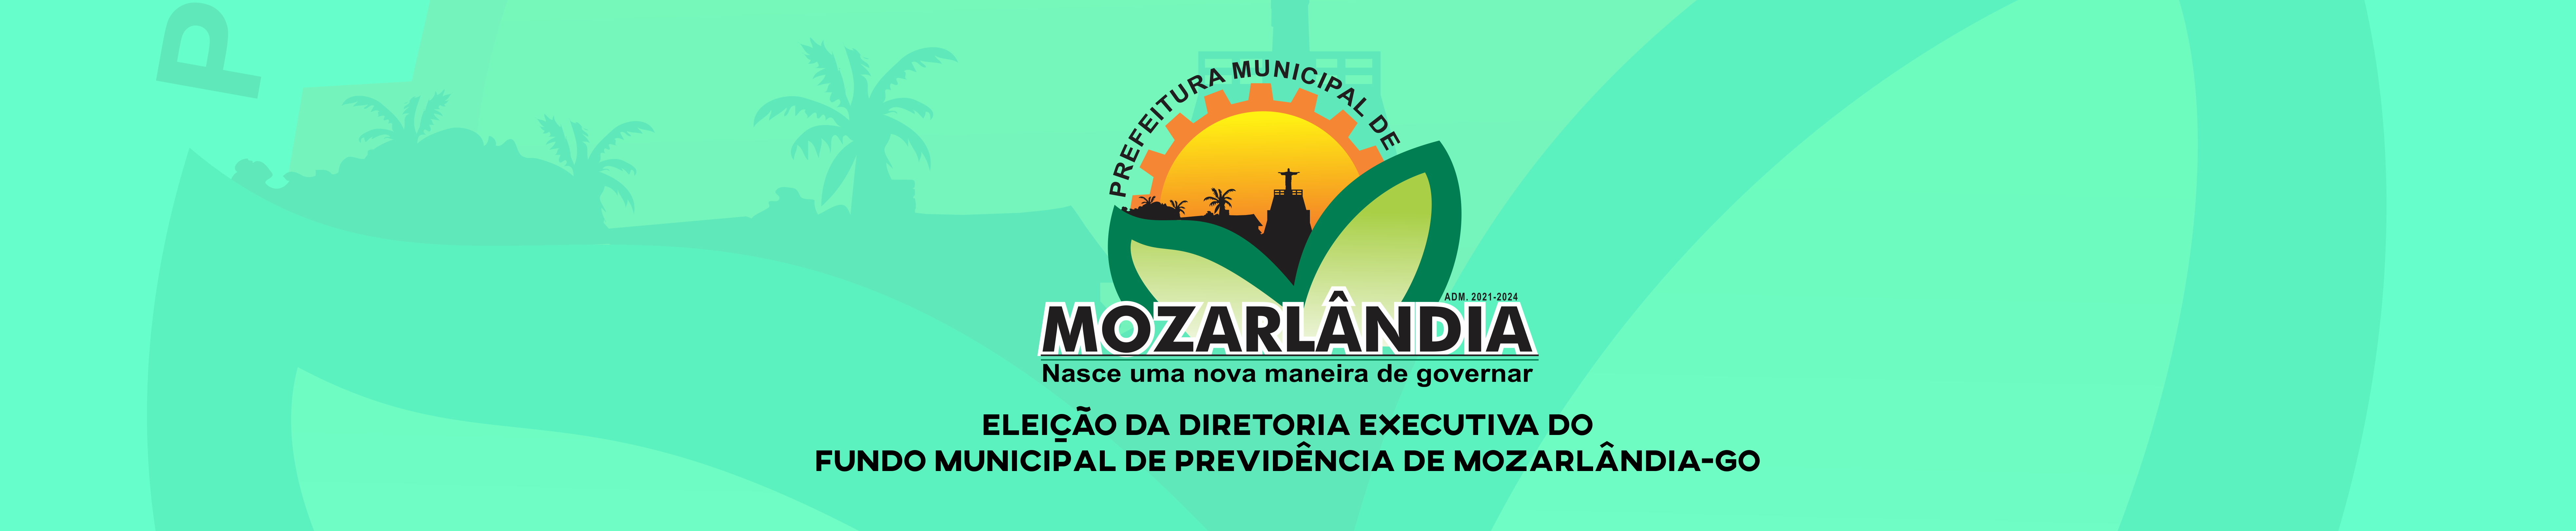 Eleição da Diretoria Executiva do Fundo Municipal de Previdência de Mozarlândia-GO